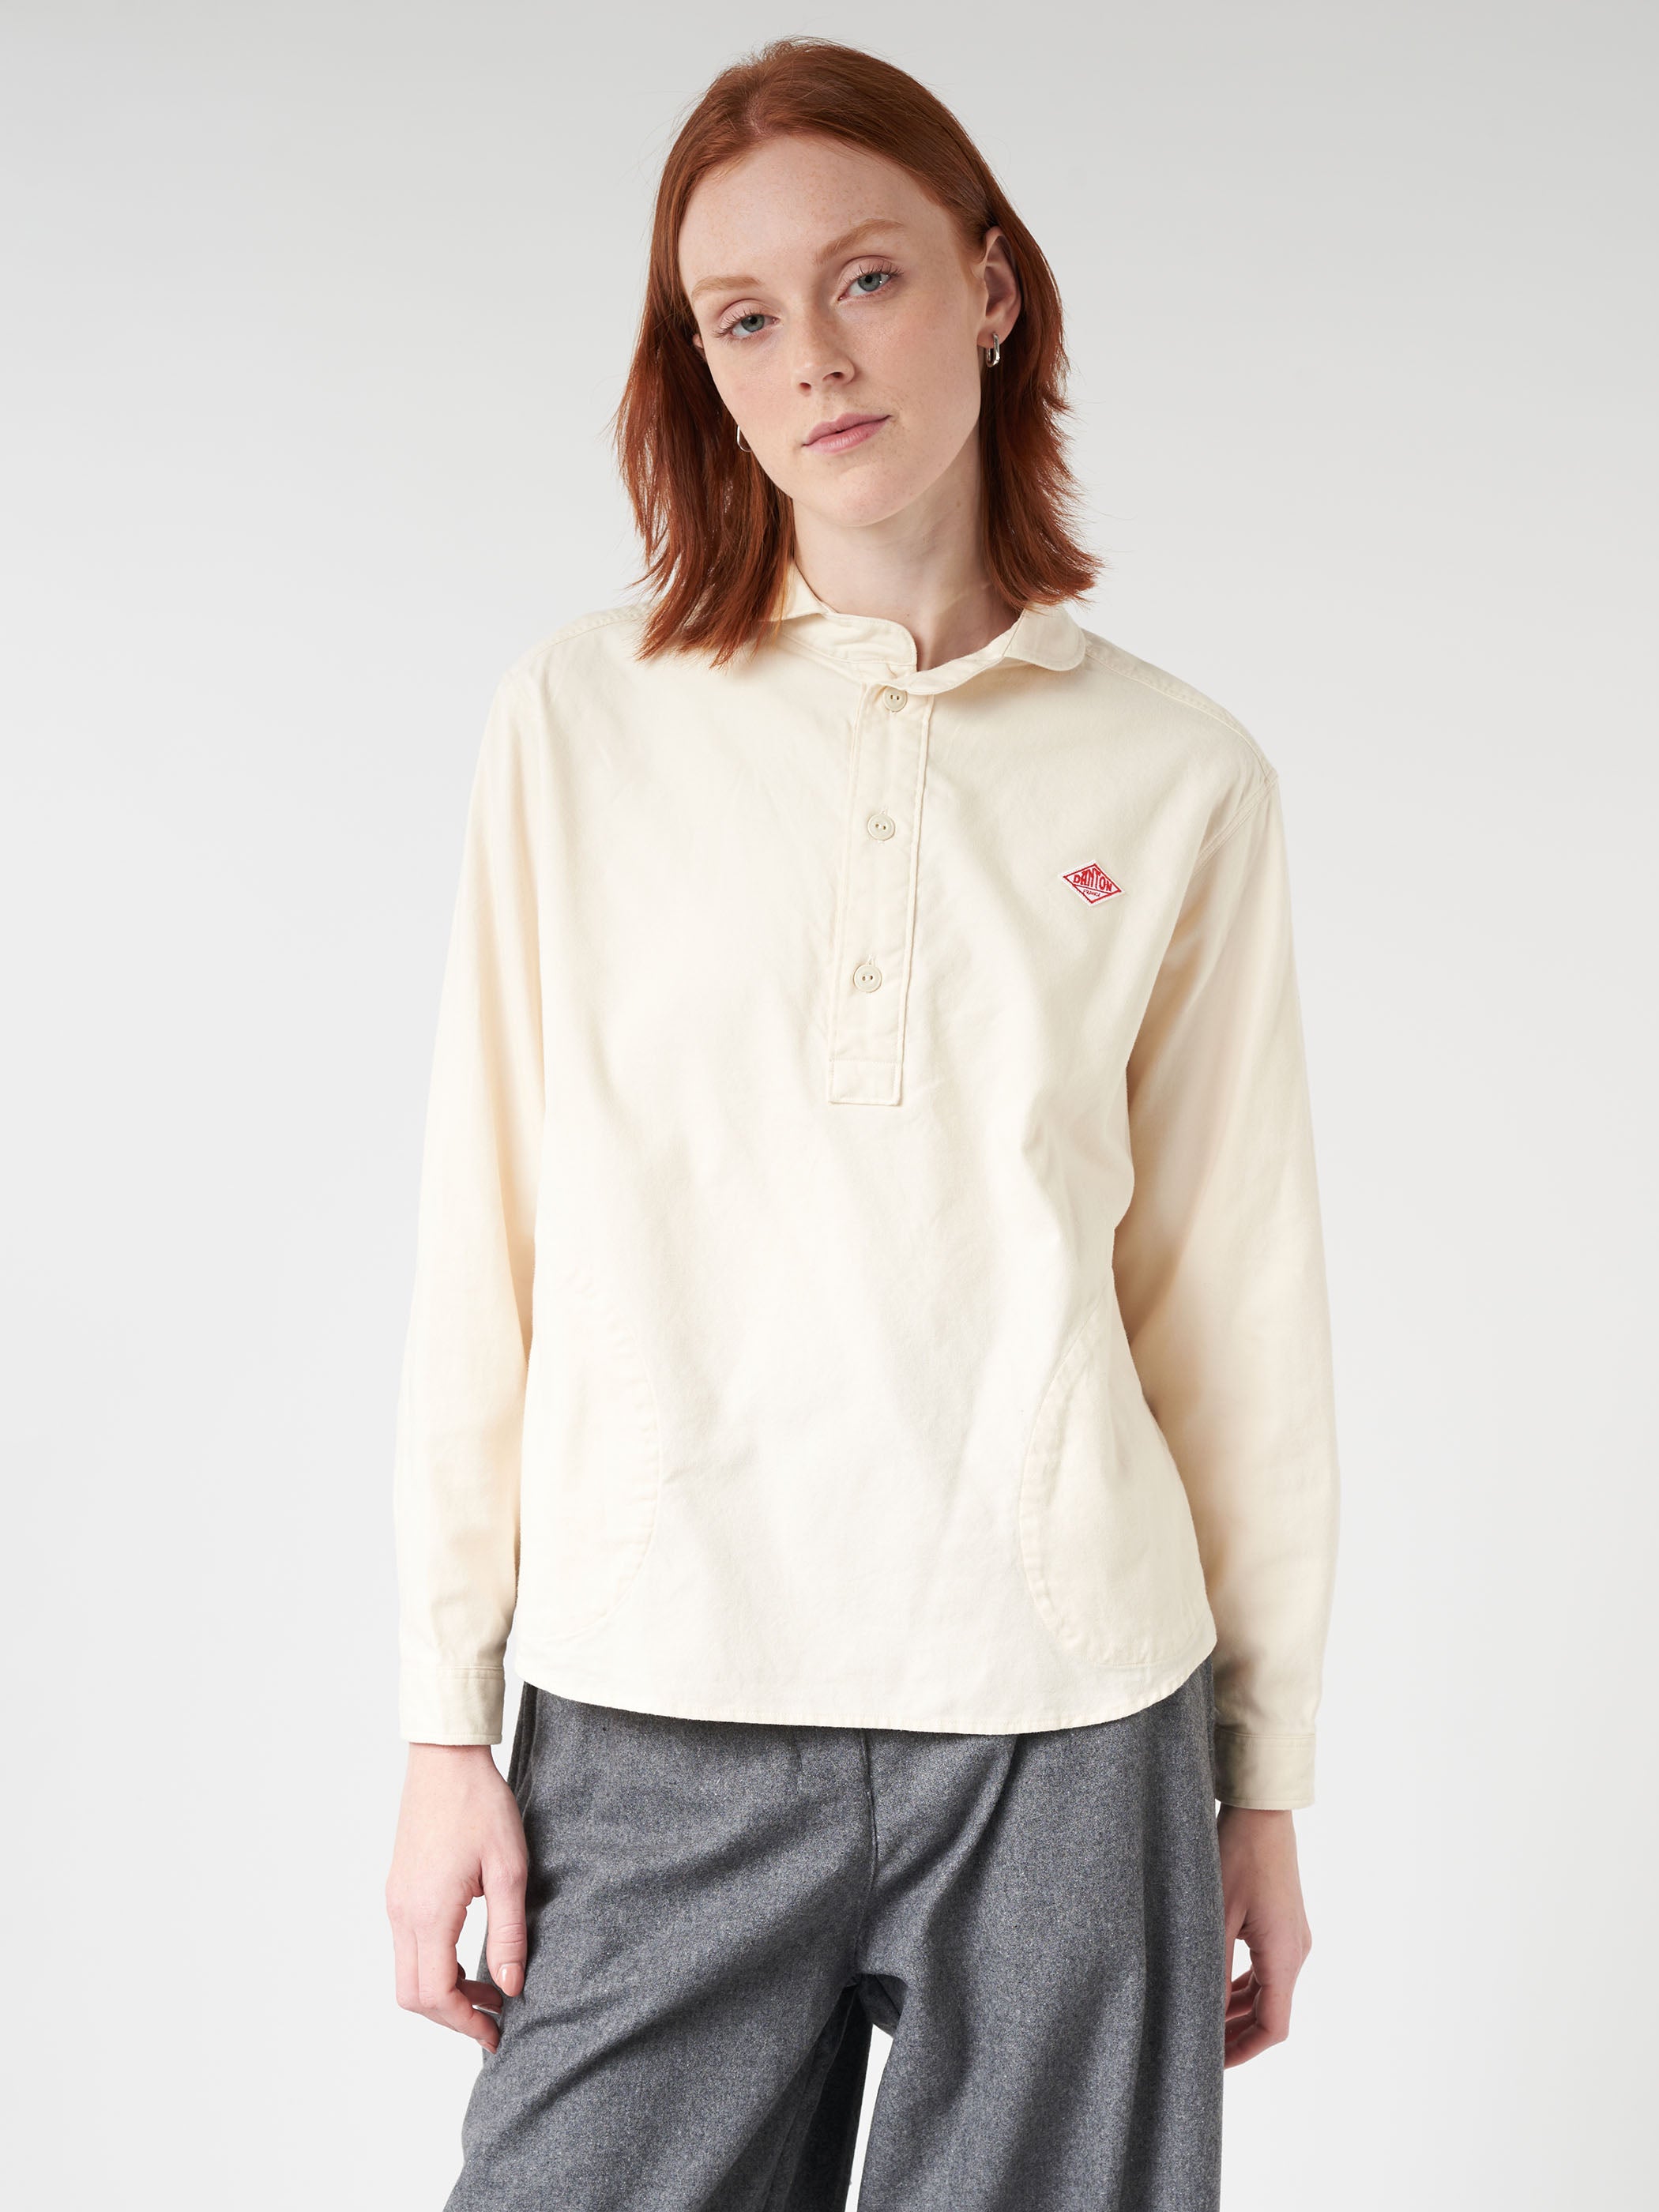 Women's Cotton Flannel Round Collar Pullover Shirt